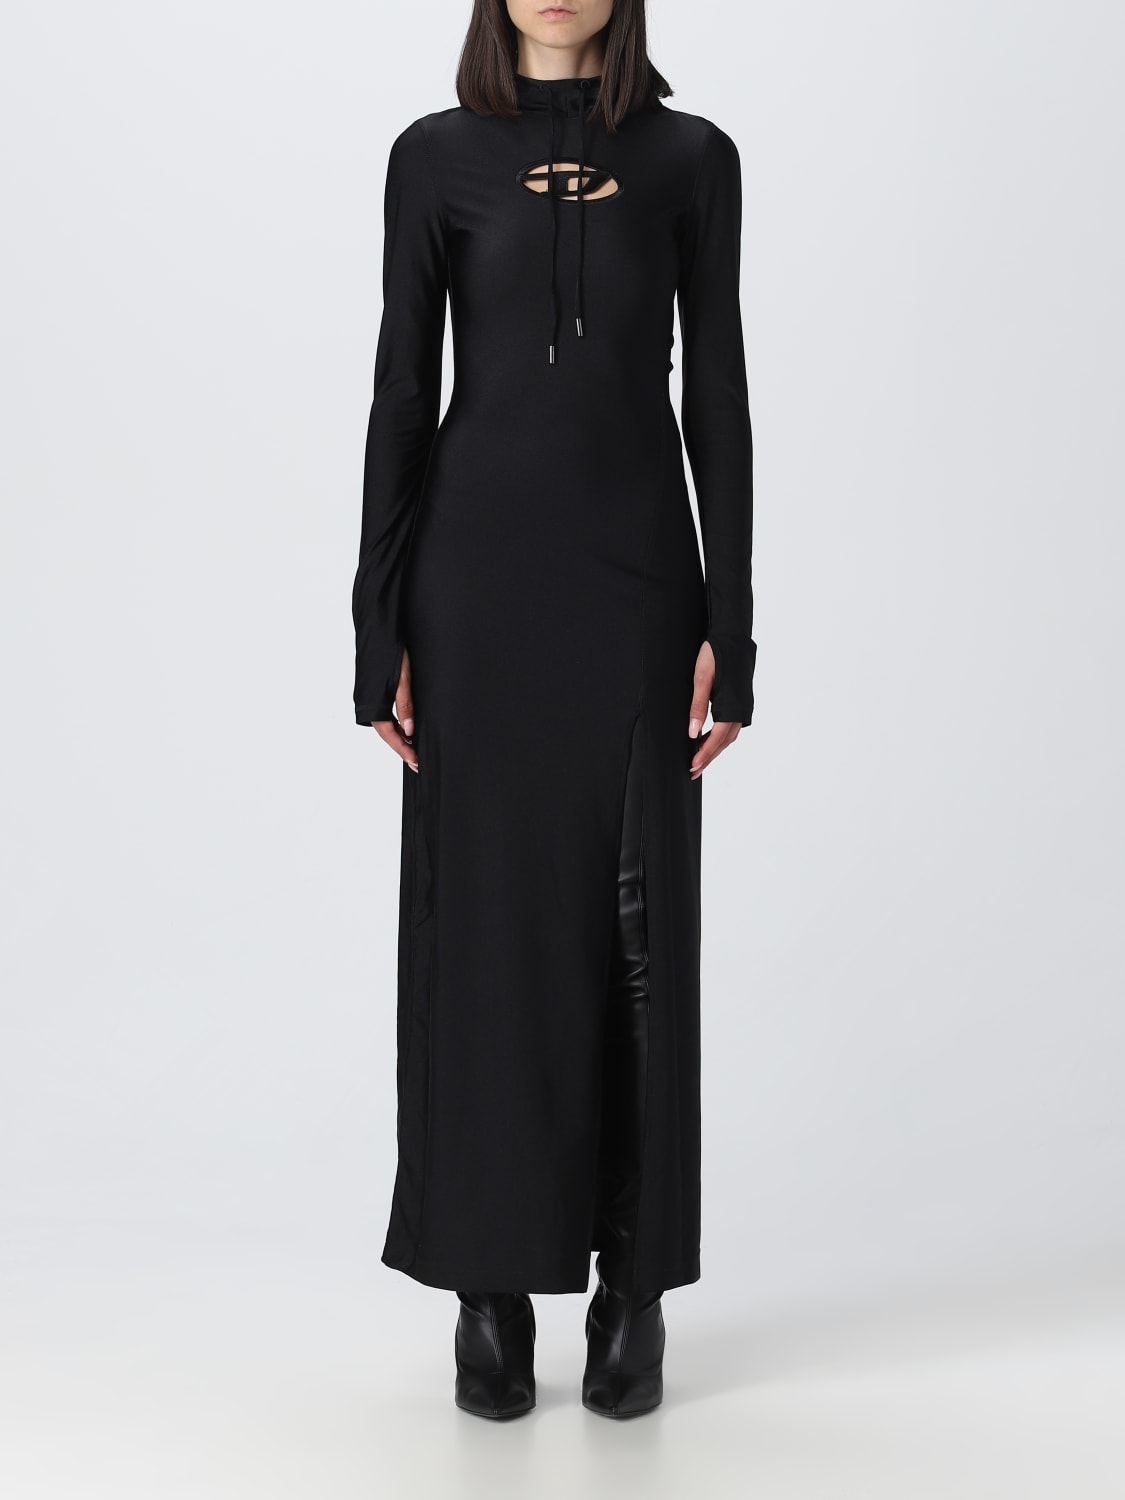 DIESEL: dress for women - Black | Diesel dress A109510JMAZ online on ...